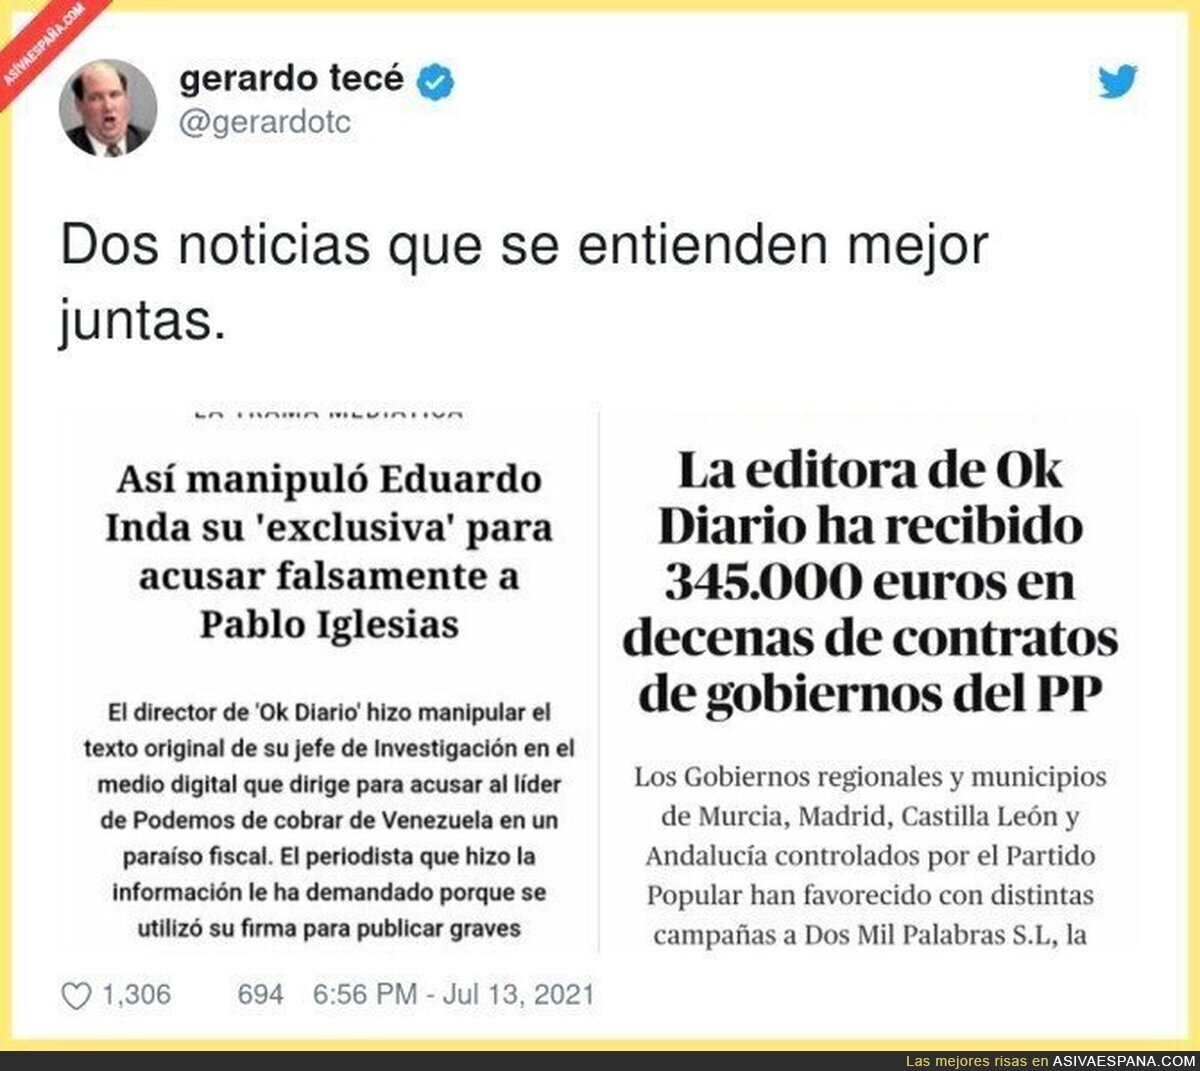 El PP de Ayuso contribuyendo a las fake news de Okdiario